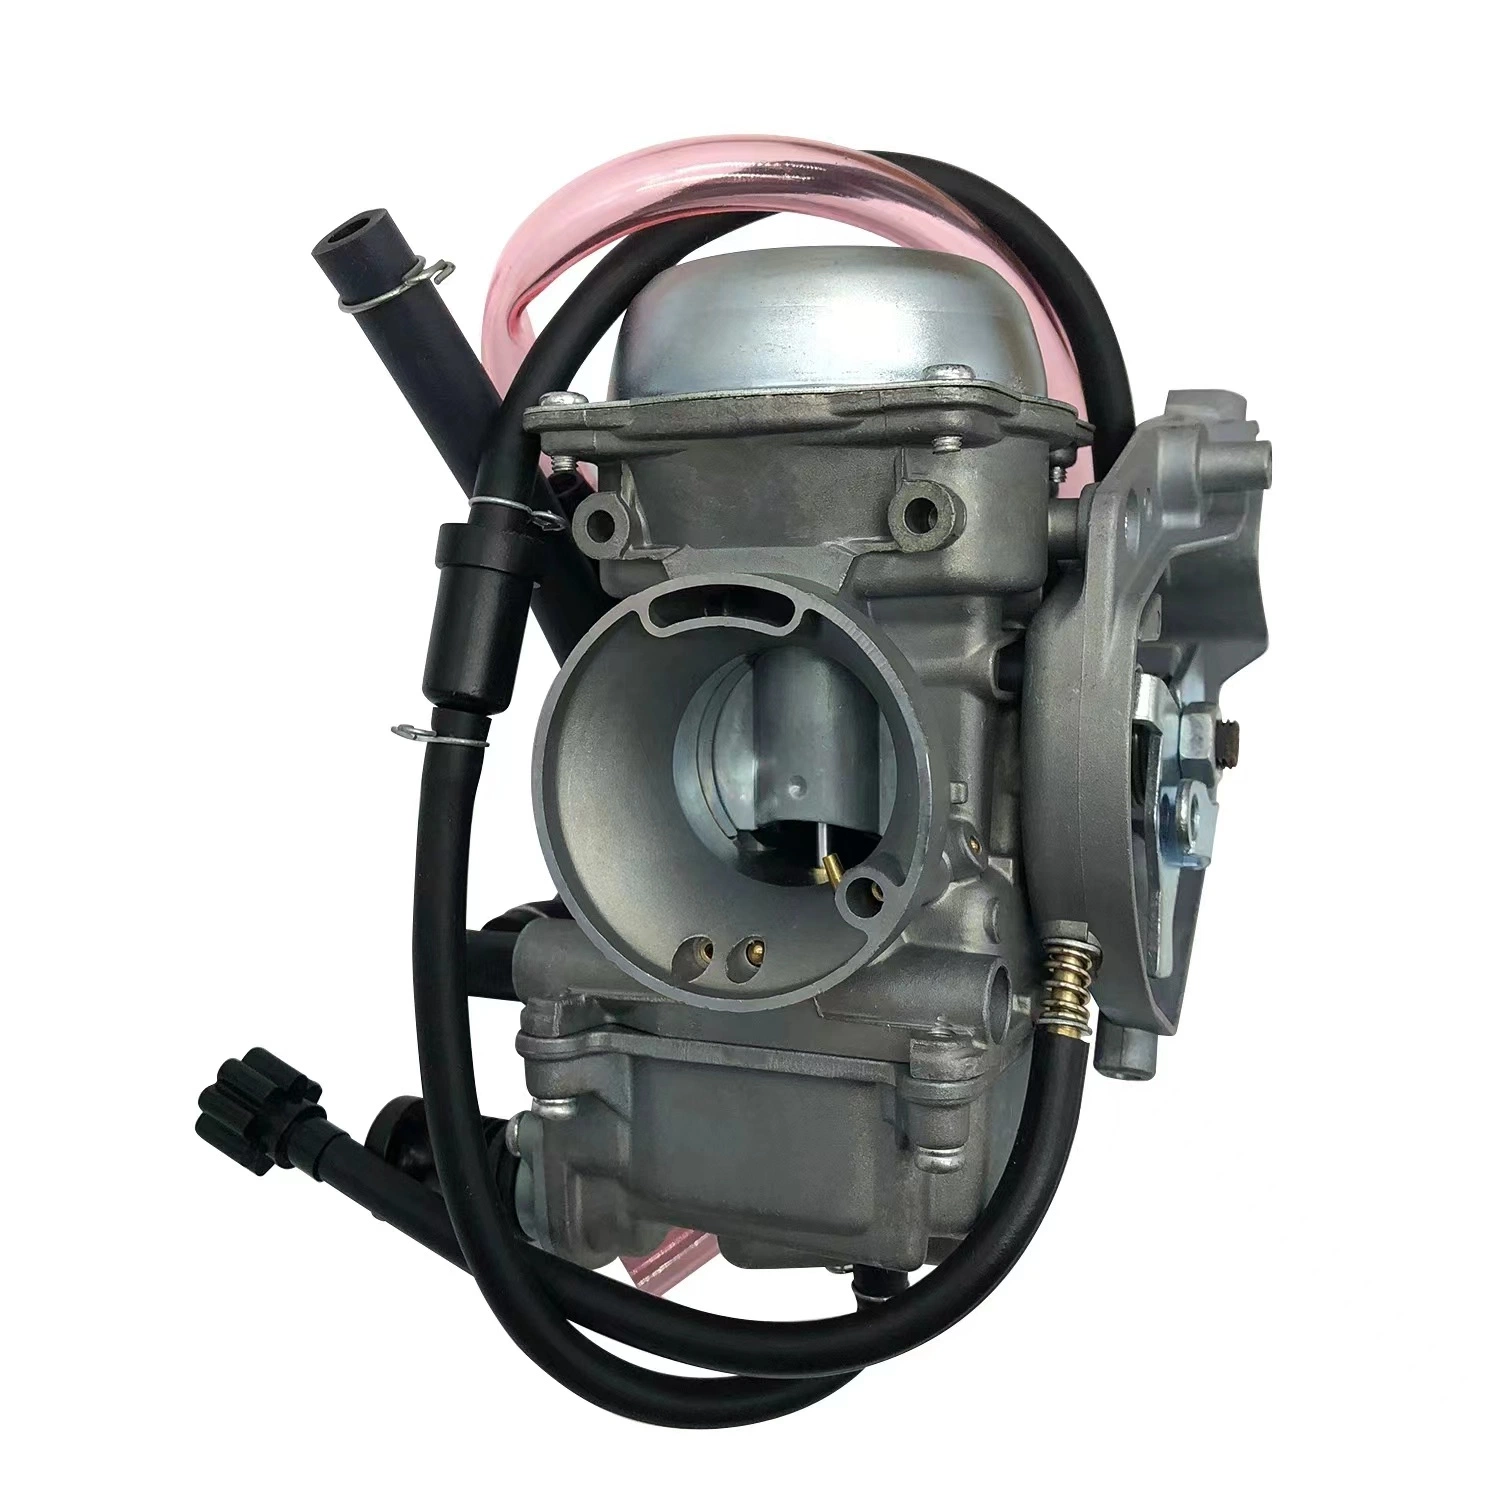 محرك قطع الدراجات النارية مناسب للتلفزيون كاواساكي برايري 400 كف400 ضمان جودة المبيعات المباشرة لعام 19factory